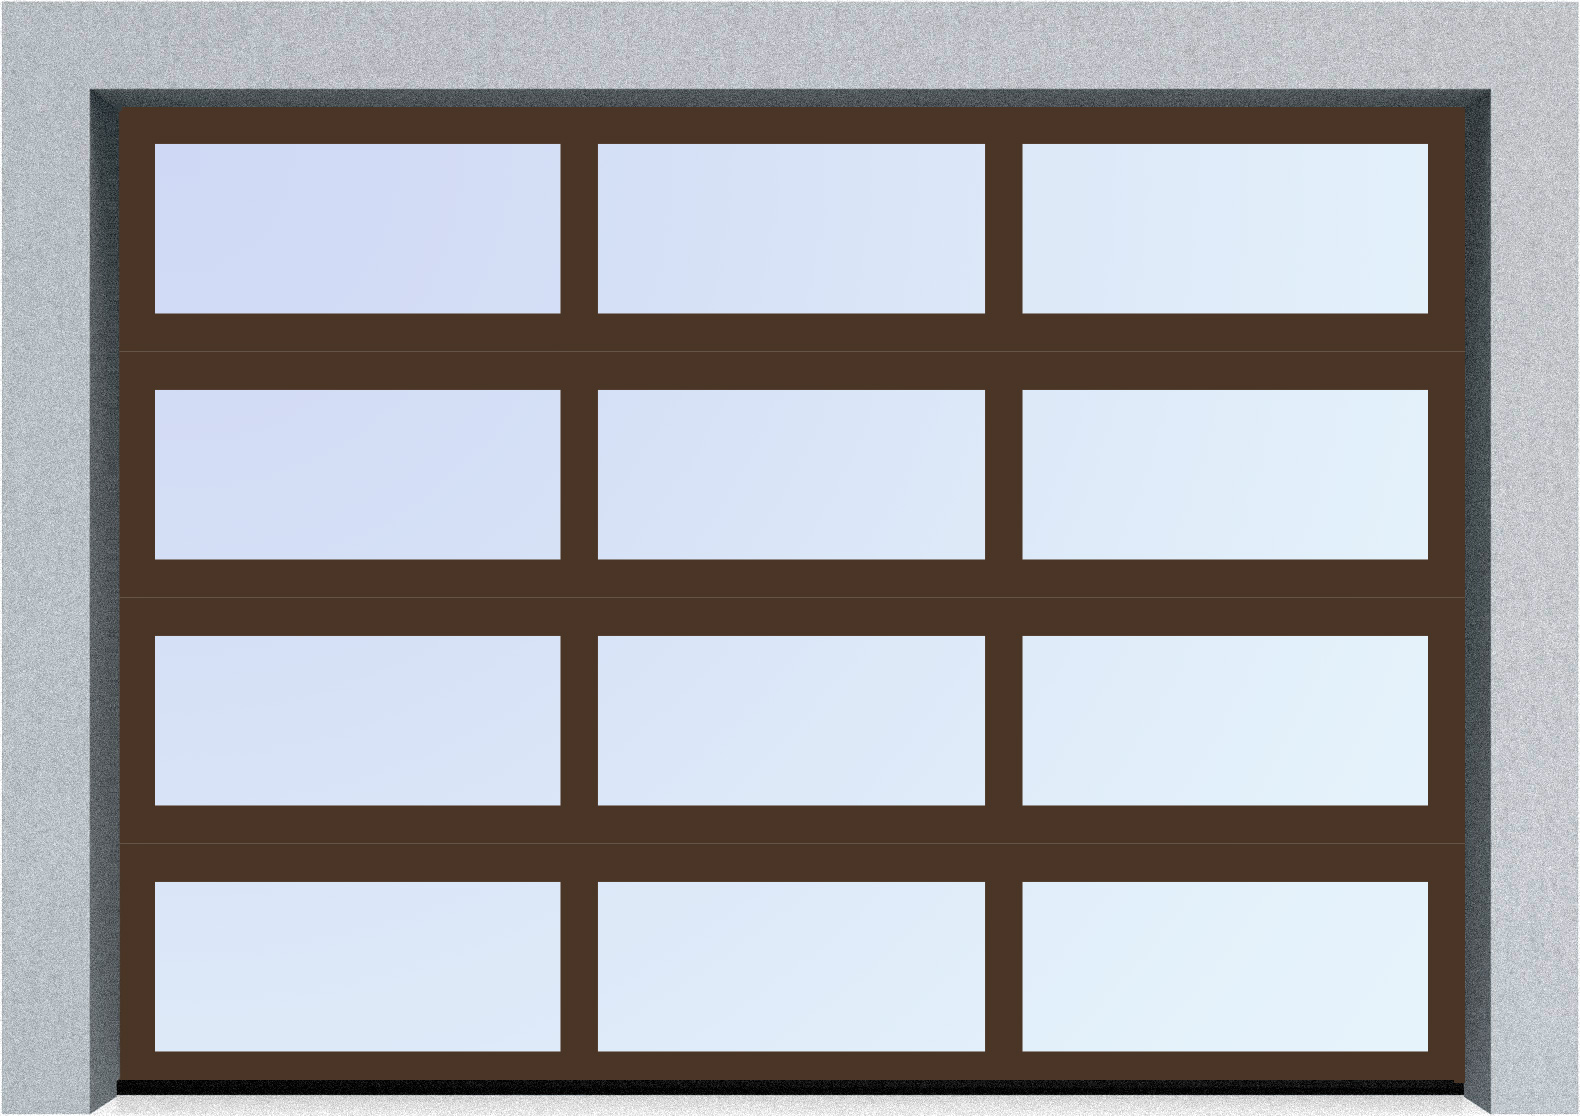  Секционные панорамные ворота серии AluTrend (АЛП) 5000х4500 нижняя панель стандартные цвета, фото 6 